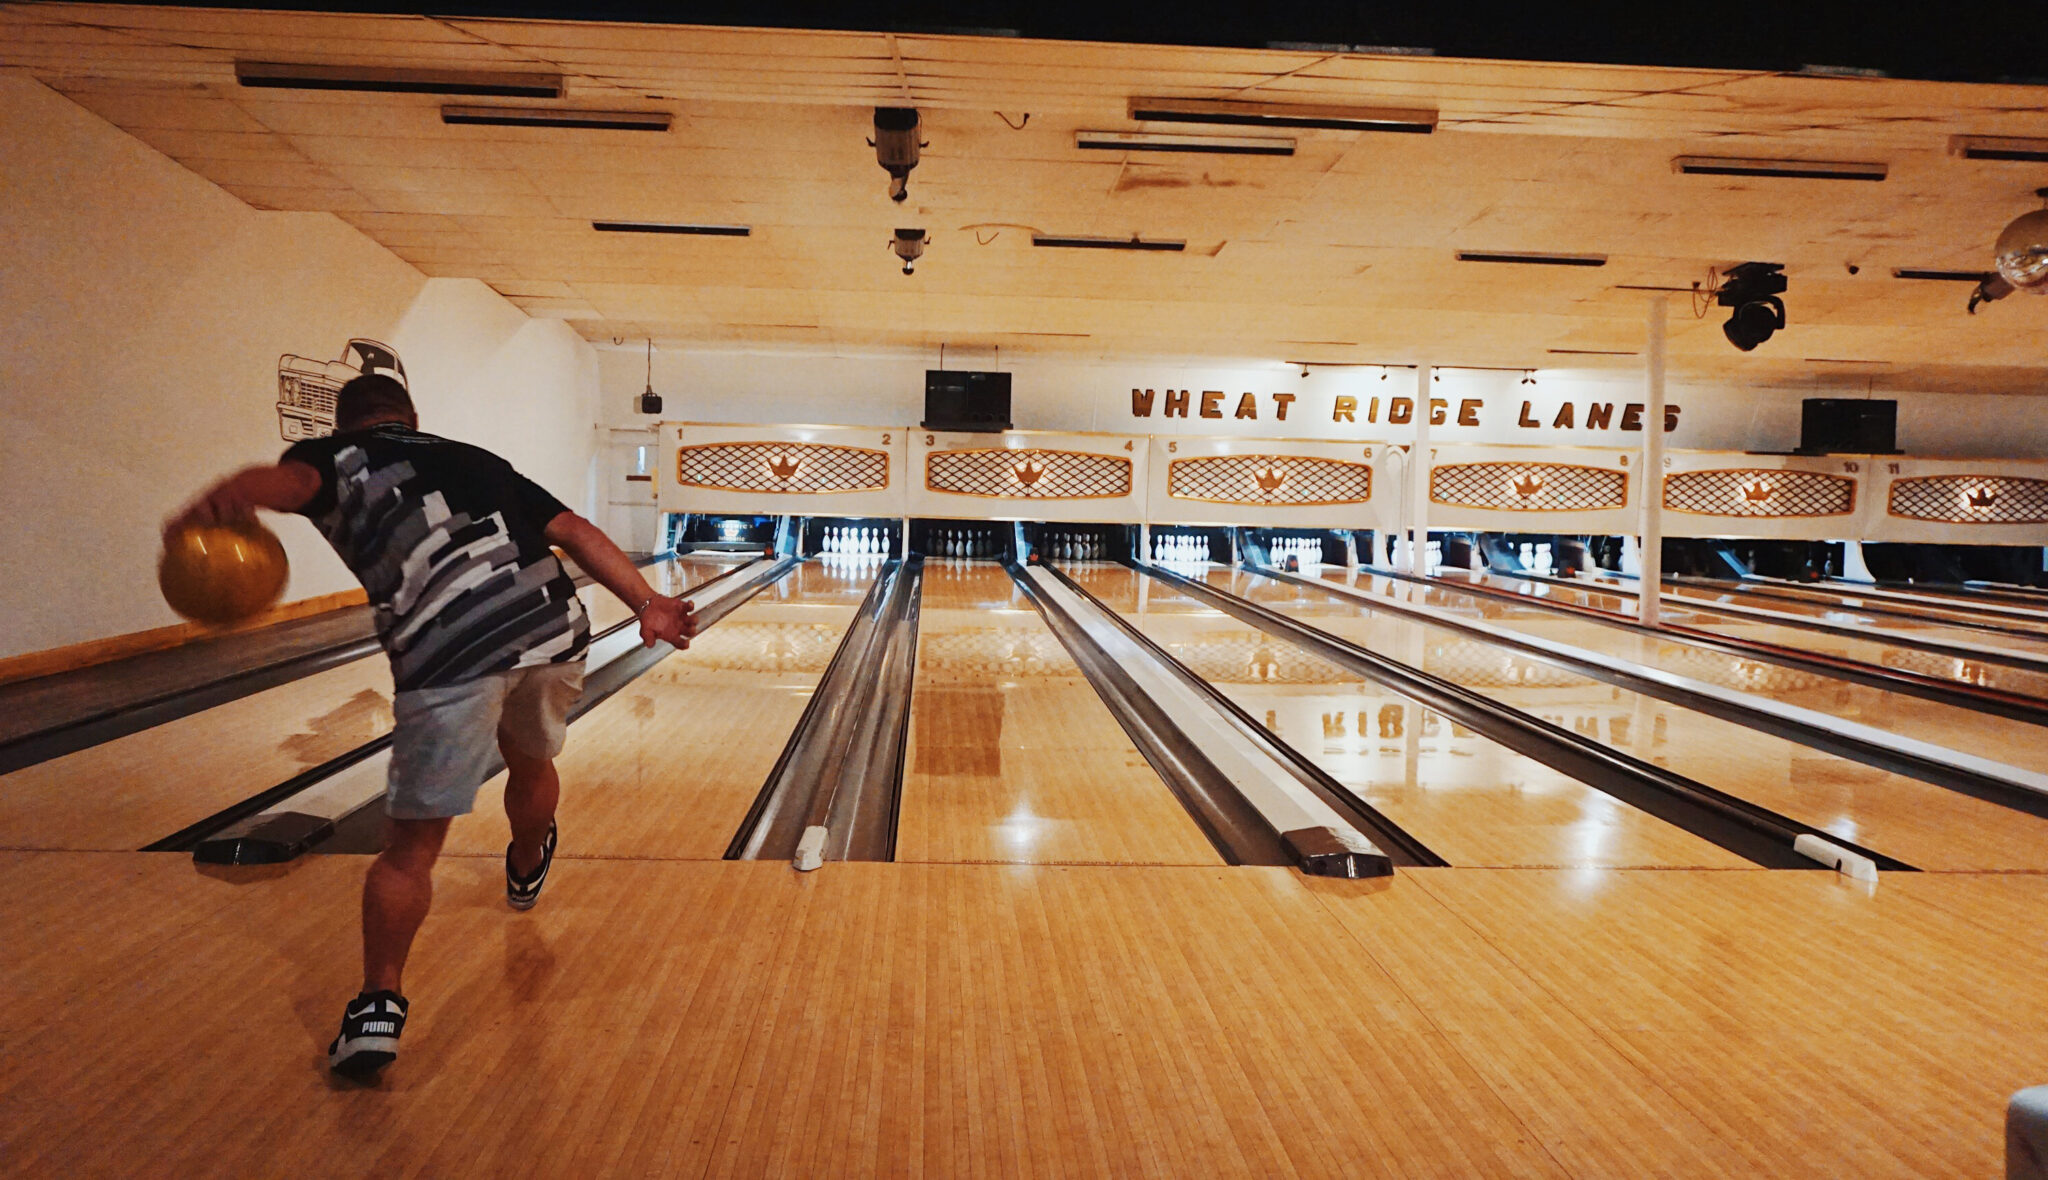 5.21D Wheat Ridge Lanes bowling scaled